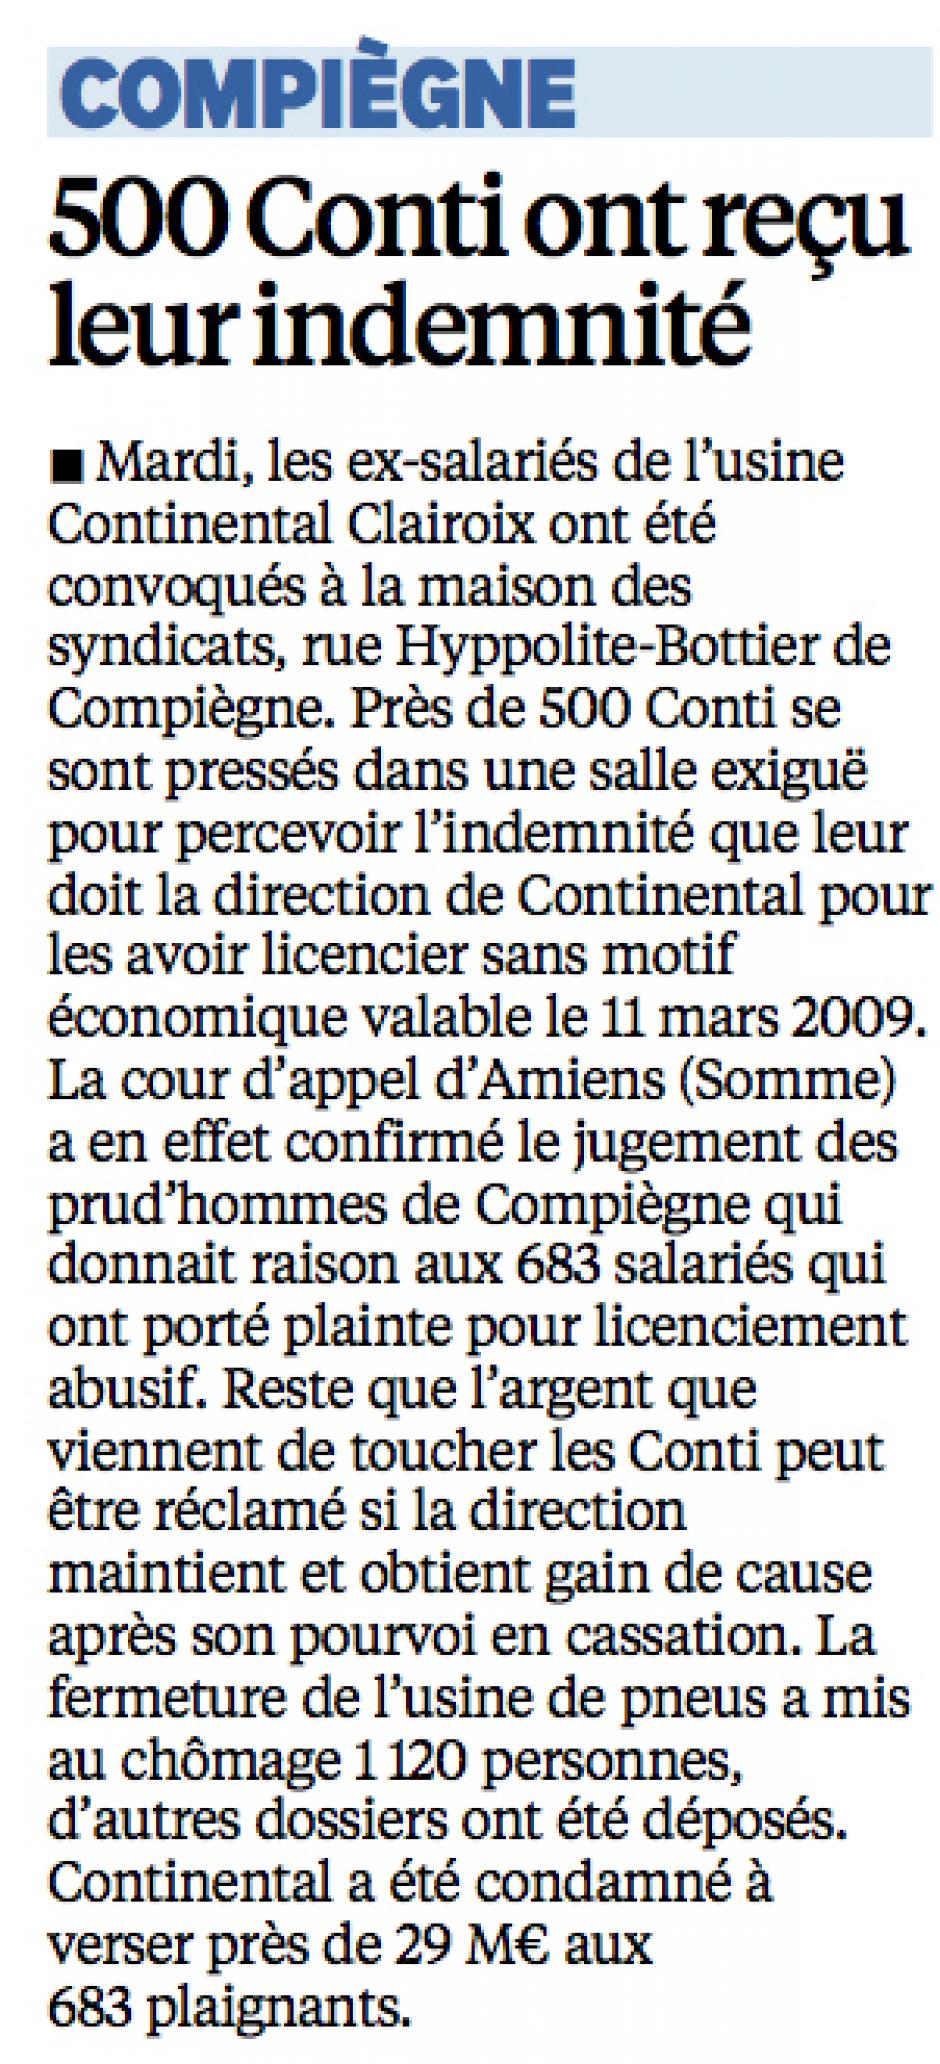 20150102-LeP-Compiègne-500 Conti ont reçu leur indemnité